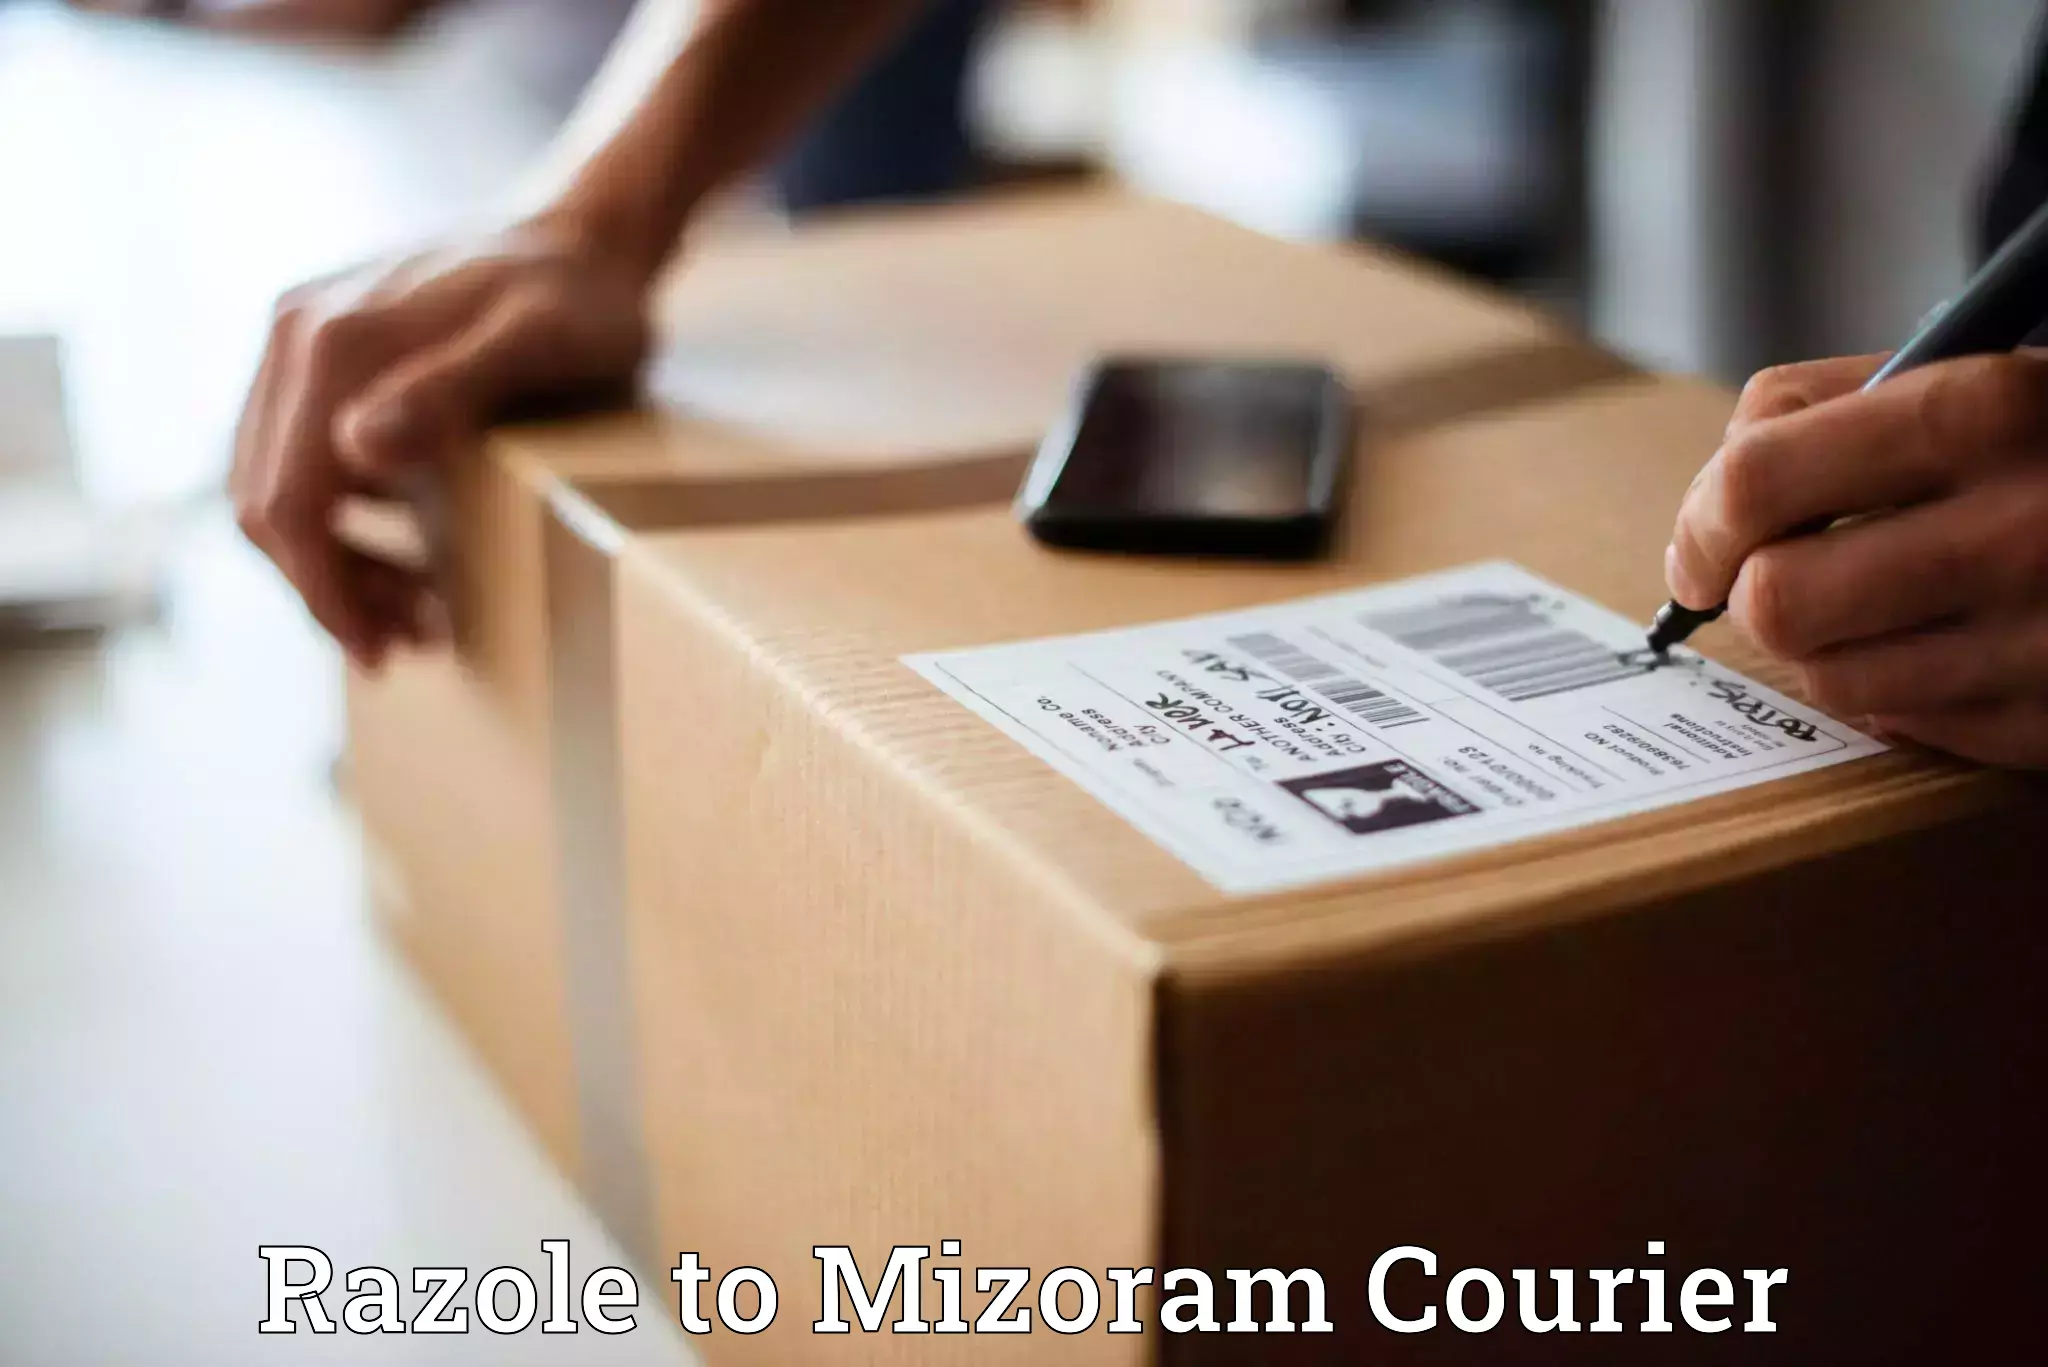 Door-to-door freight service Razole to Mizoram